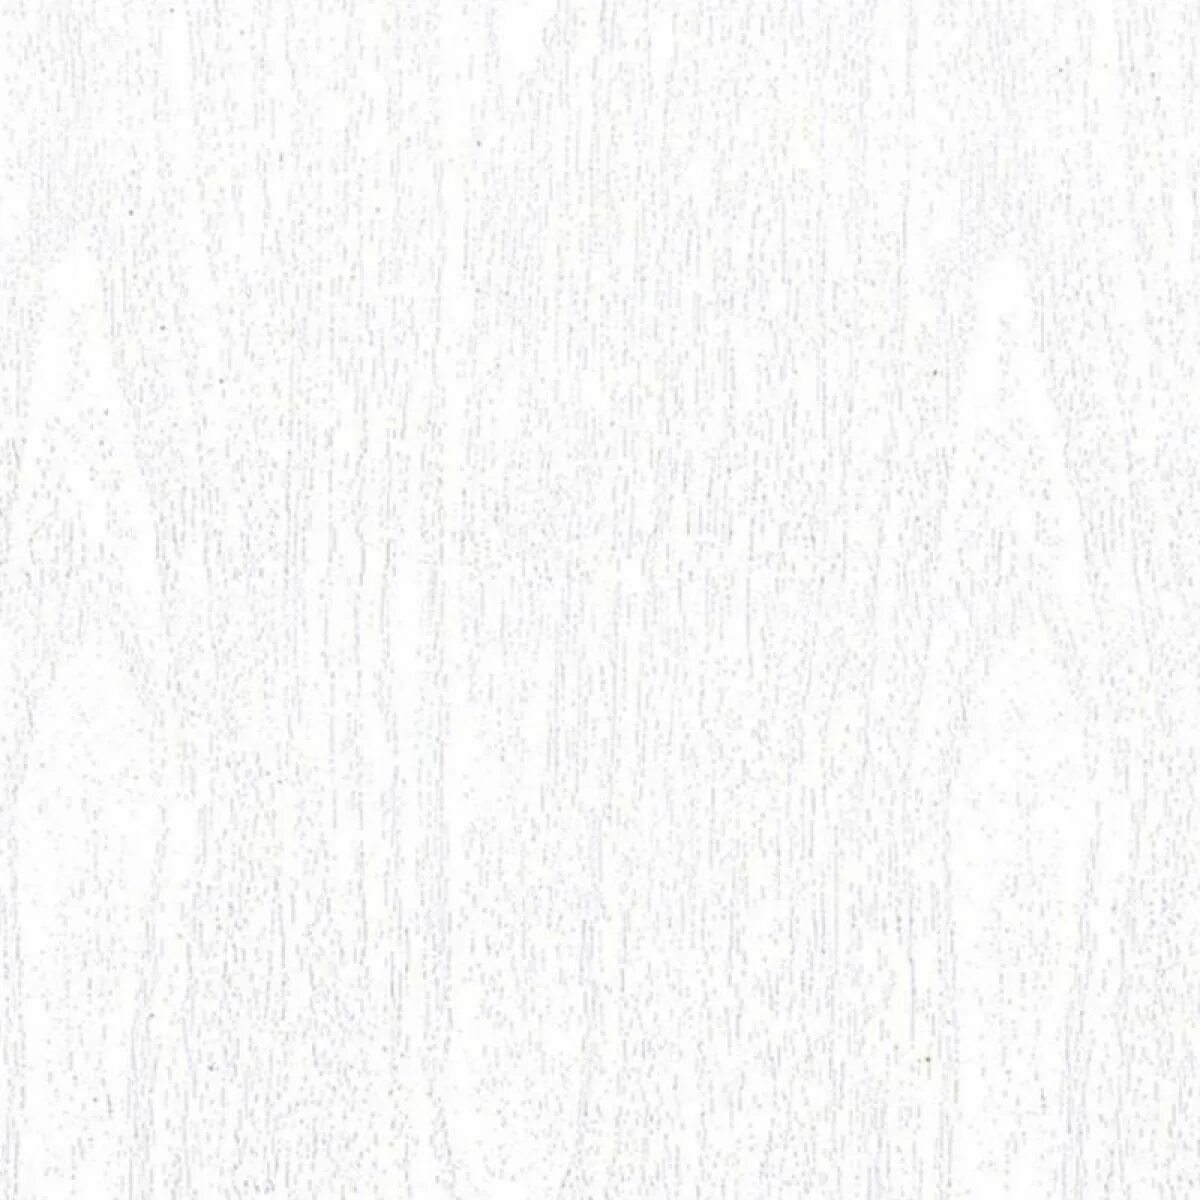 Панель ПВХ Swx 73. Панель ПВХ Swx 73 белое дерево 2700х250х10 мм. Панель пластик 2,7х0,25м 8мм verdi белый ясень Swx 73 (лак). 83049711виниловая панель ПВХ белый ясень.